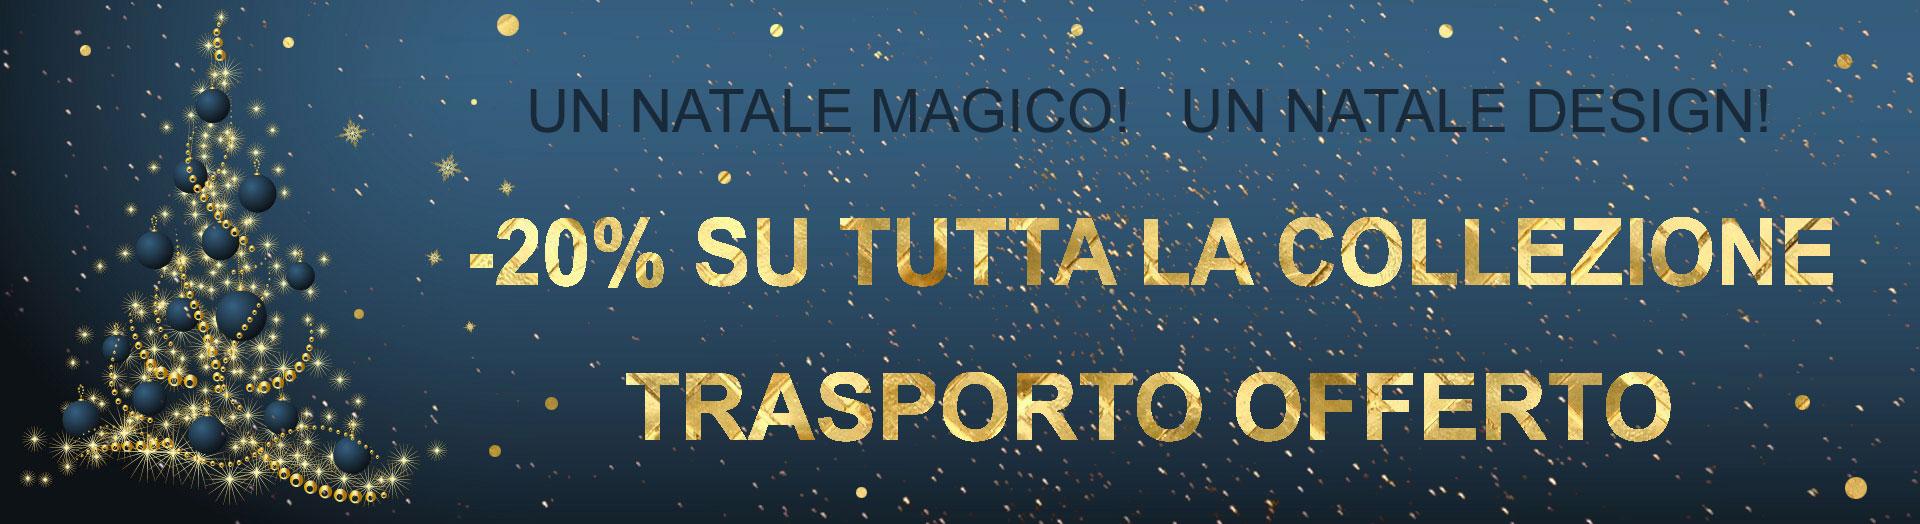 Un Natale magico! Un Natale design! meno 20% su tutta la collezione e trasporto offerto Italy Dream Design